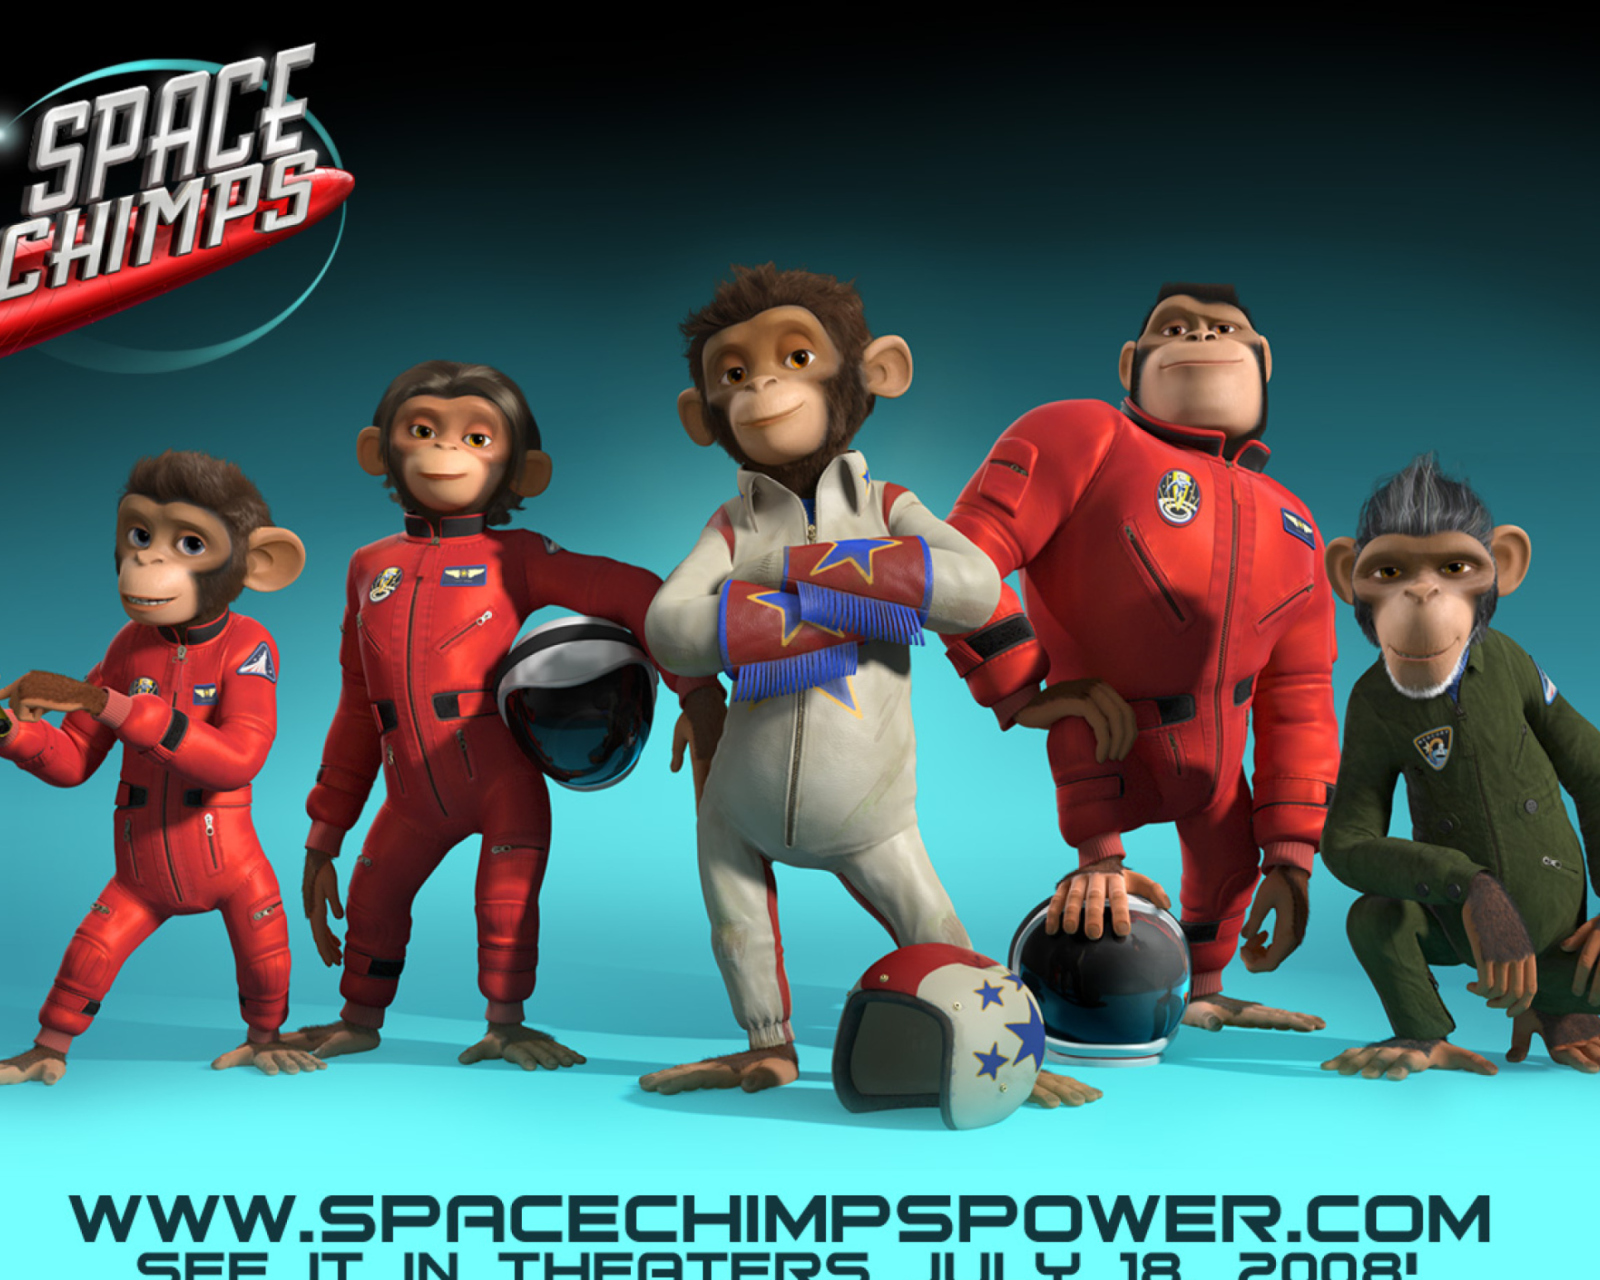 Space Chimps 2: Zartog Strikes Back wallpaper 1600x1280